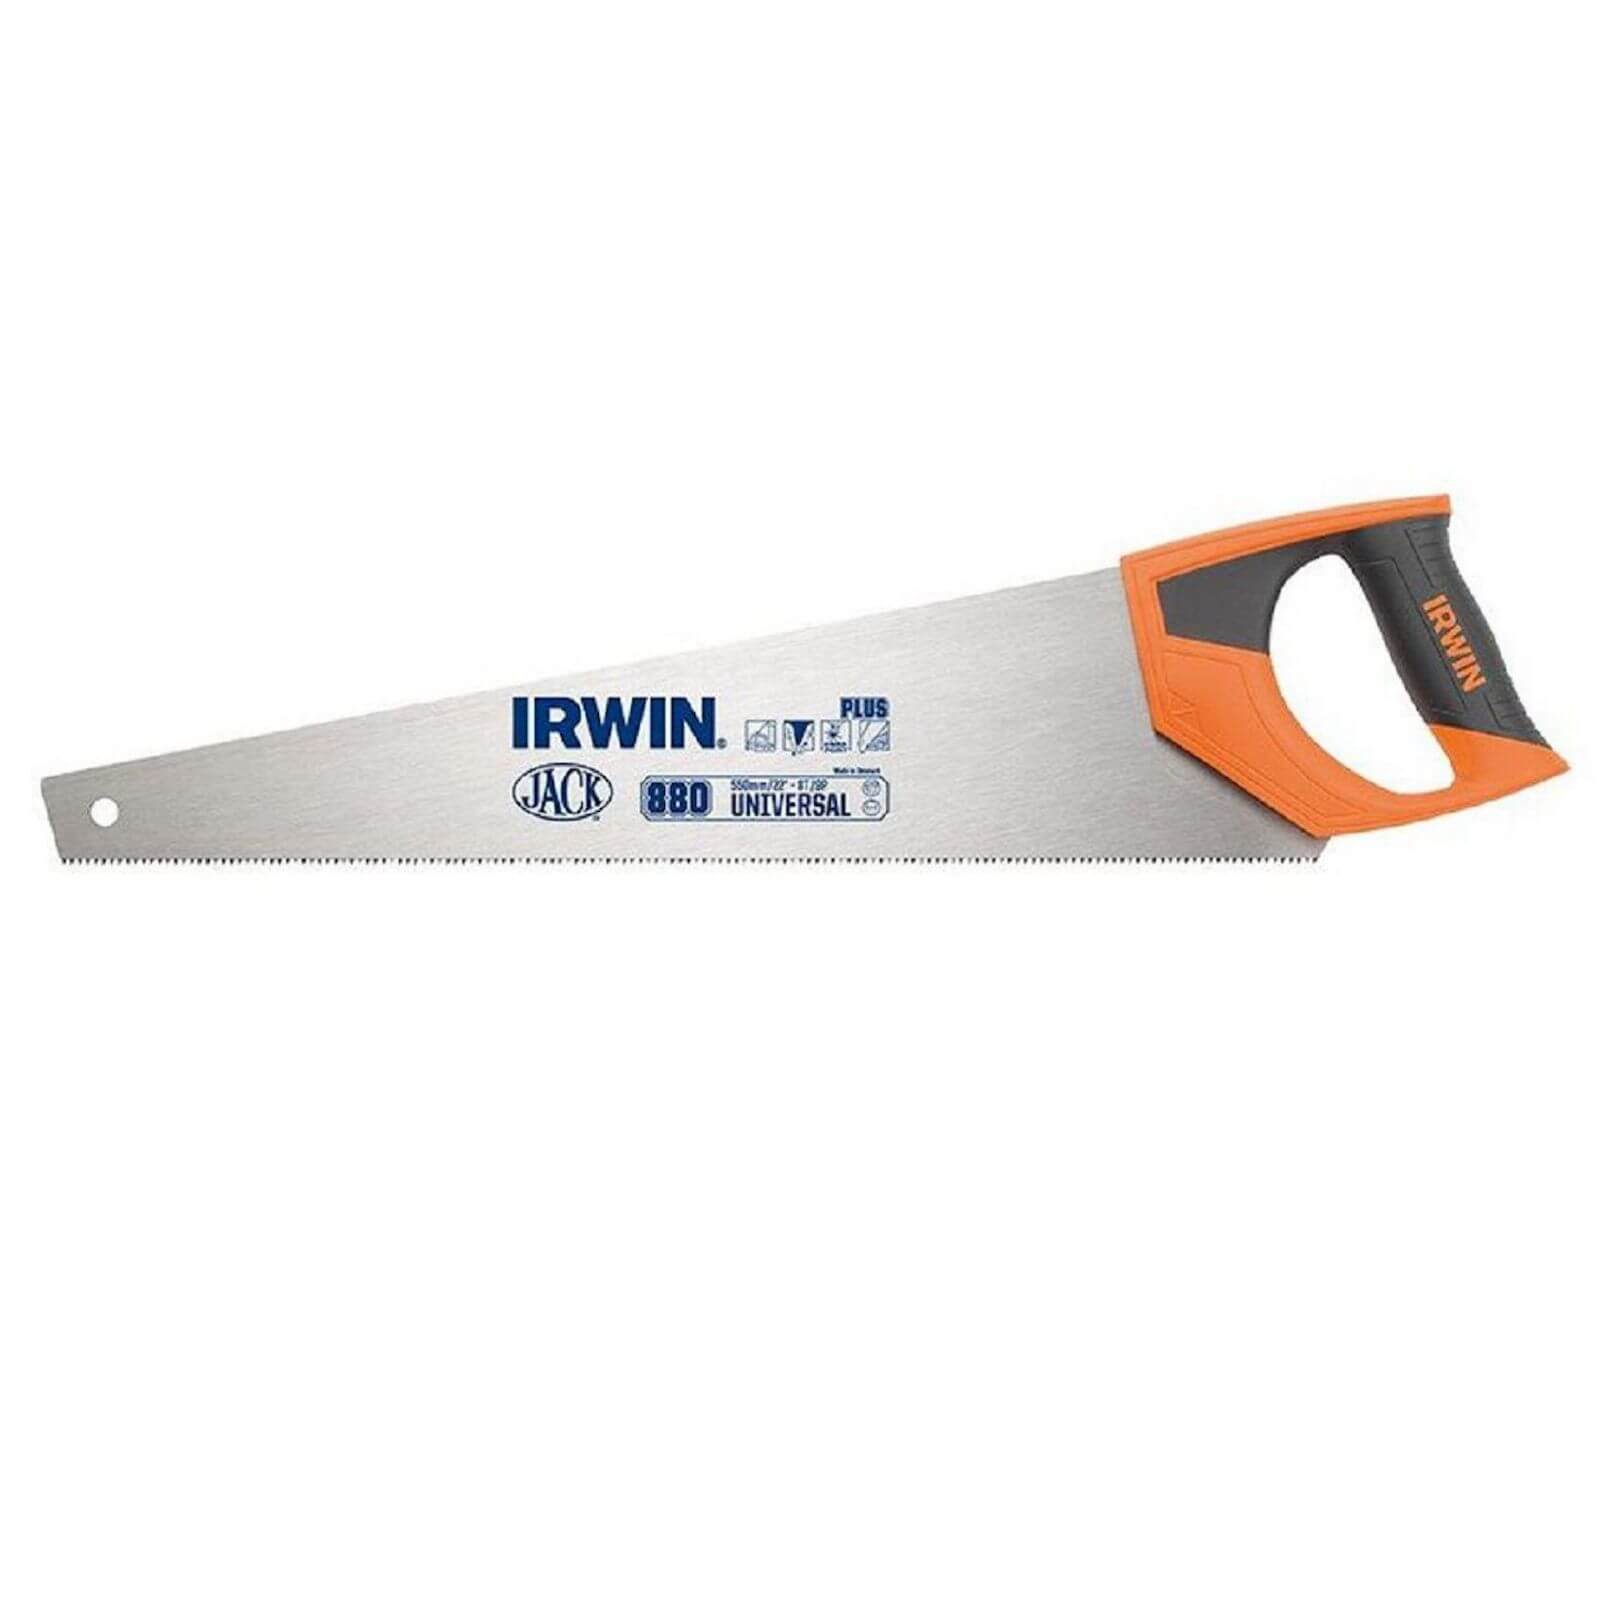 Irwin Jack 880 Universal Handsaw 550mm 22in